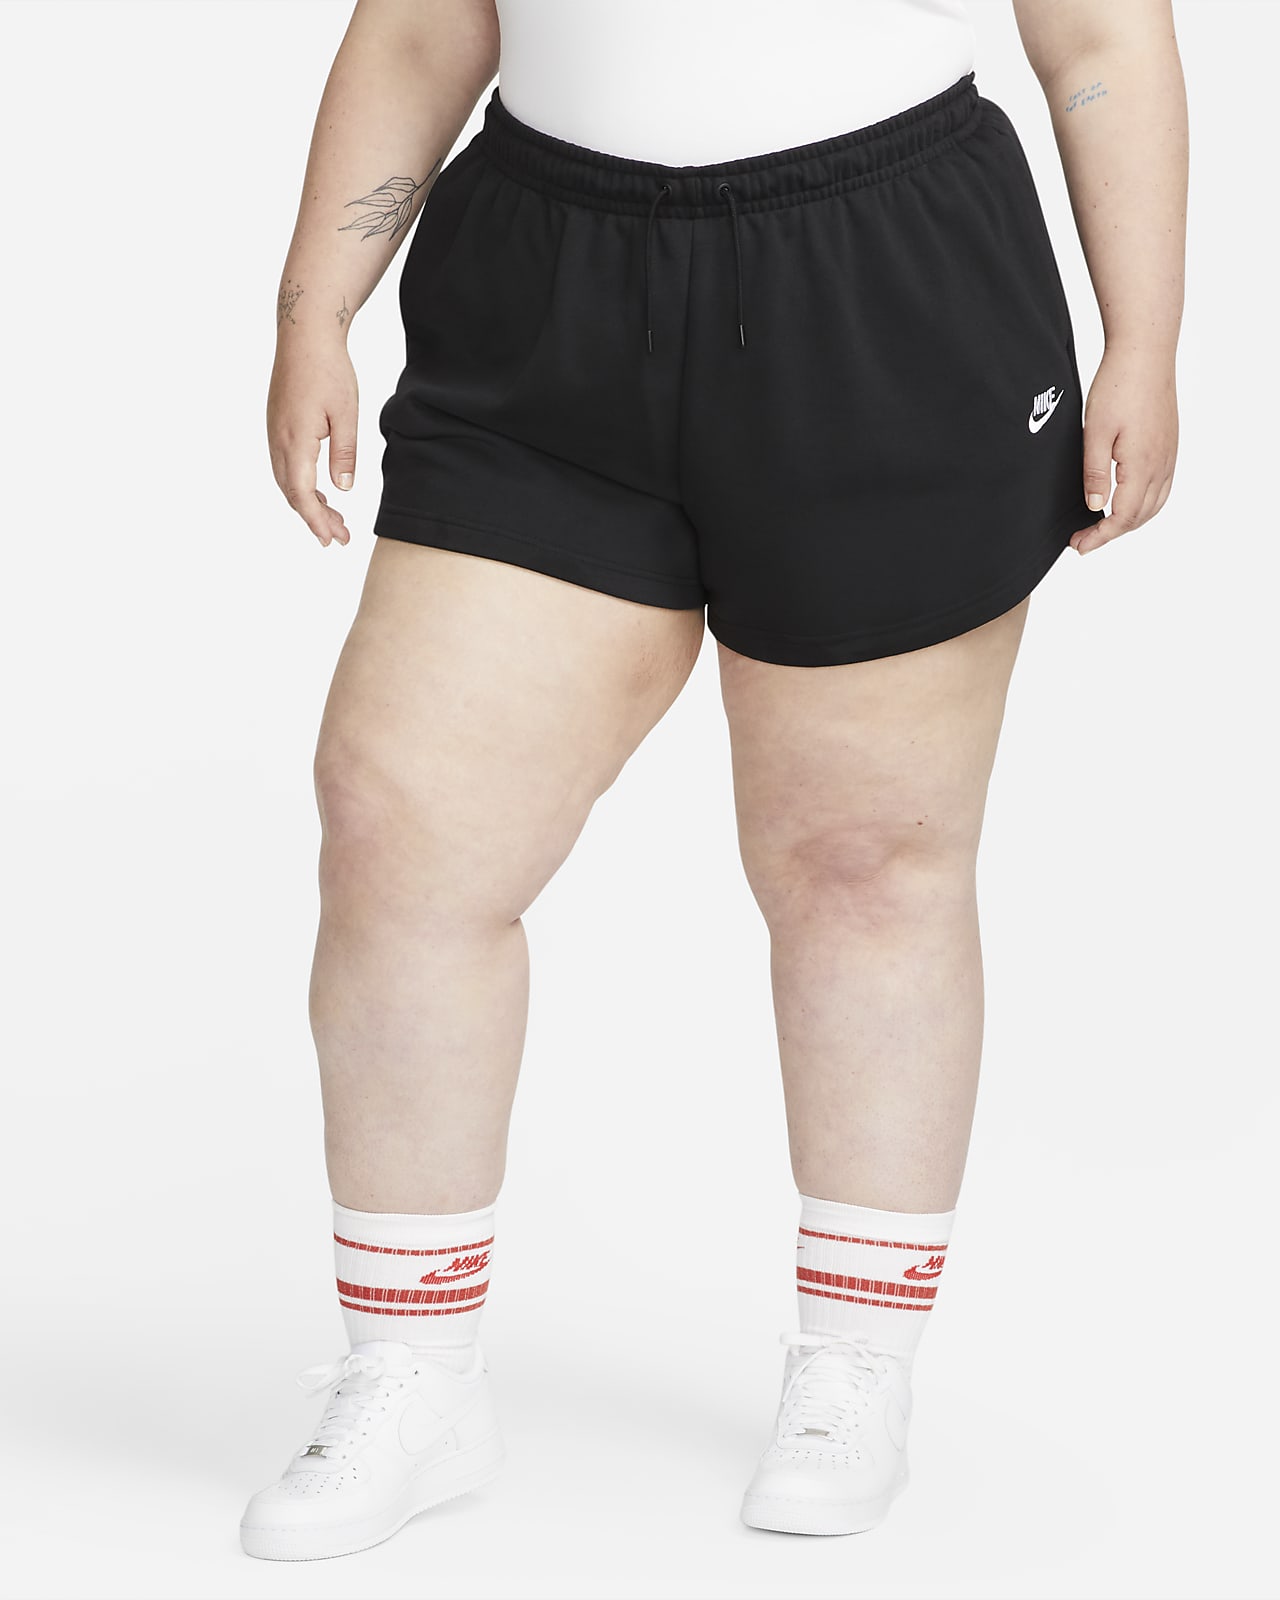 Nike Sportswear Women's Shorts (Plus Size)